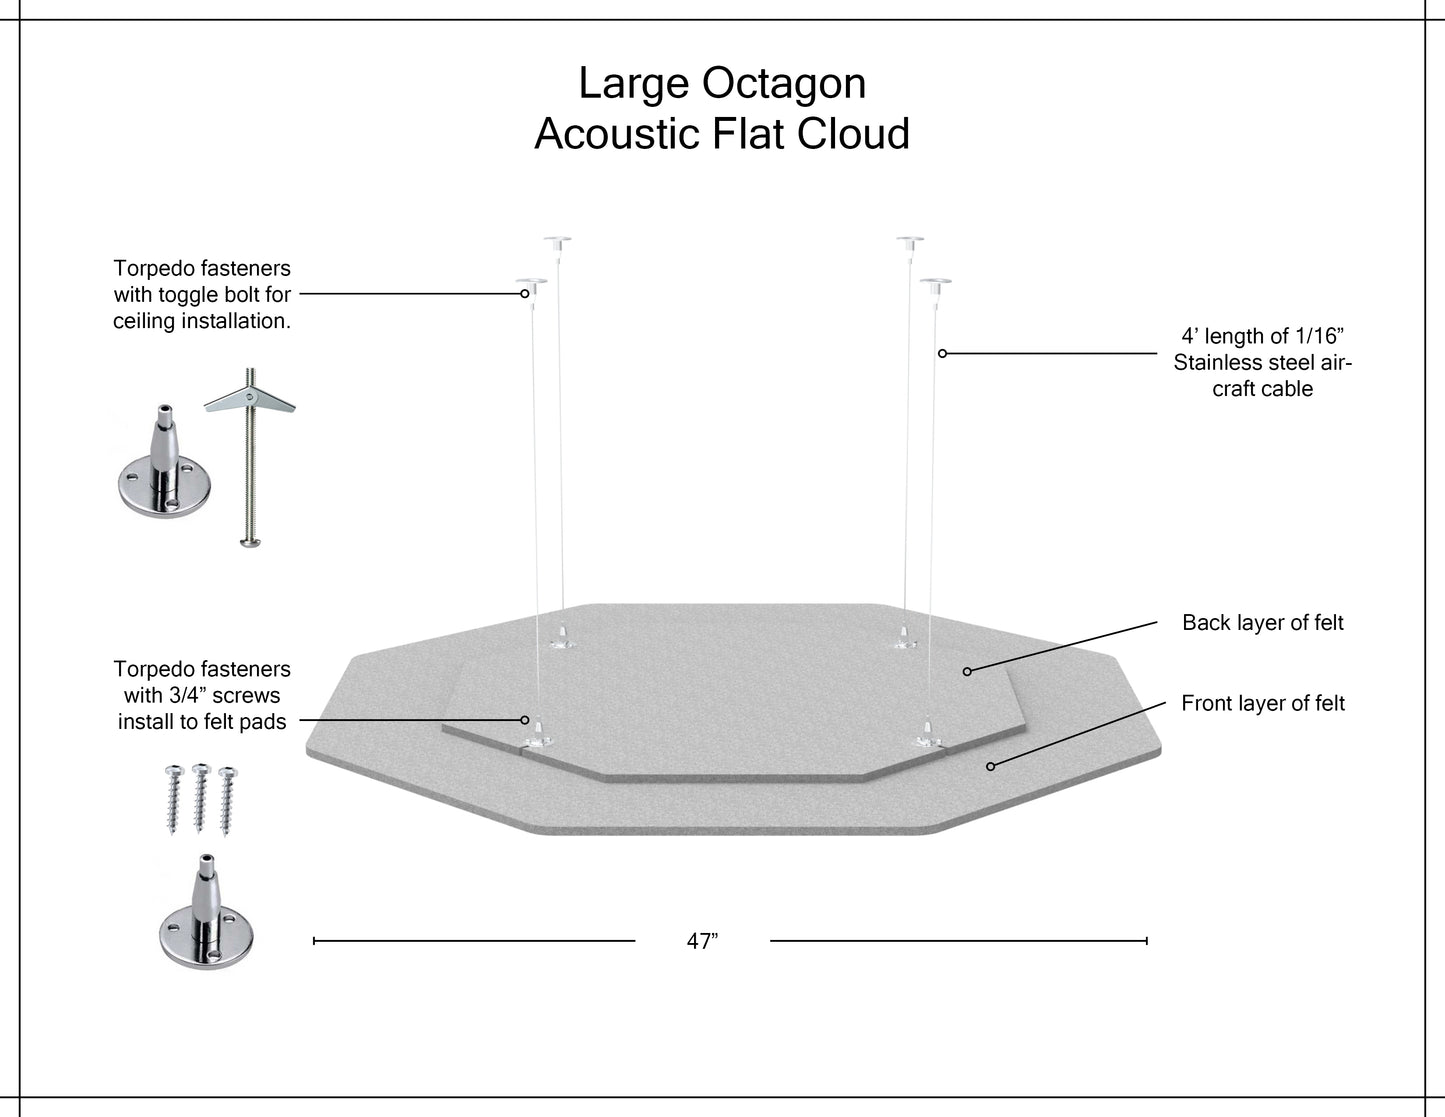 Acoustic Flat Cloud - Large Octagon